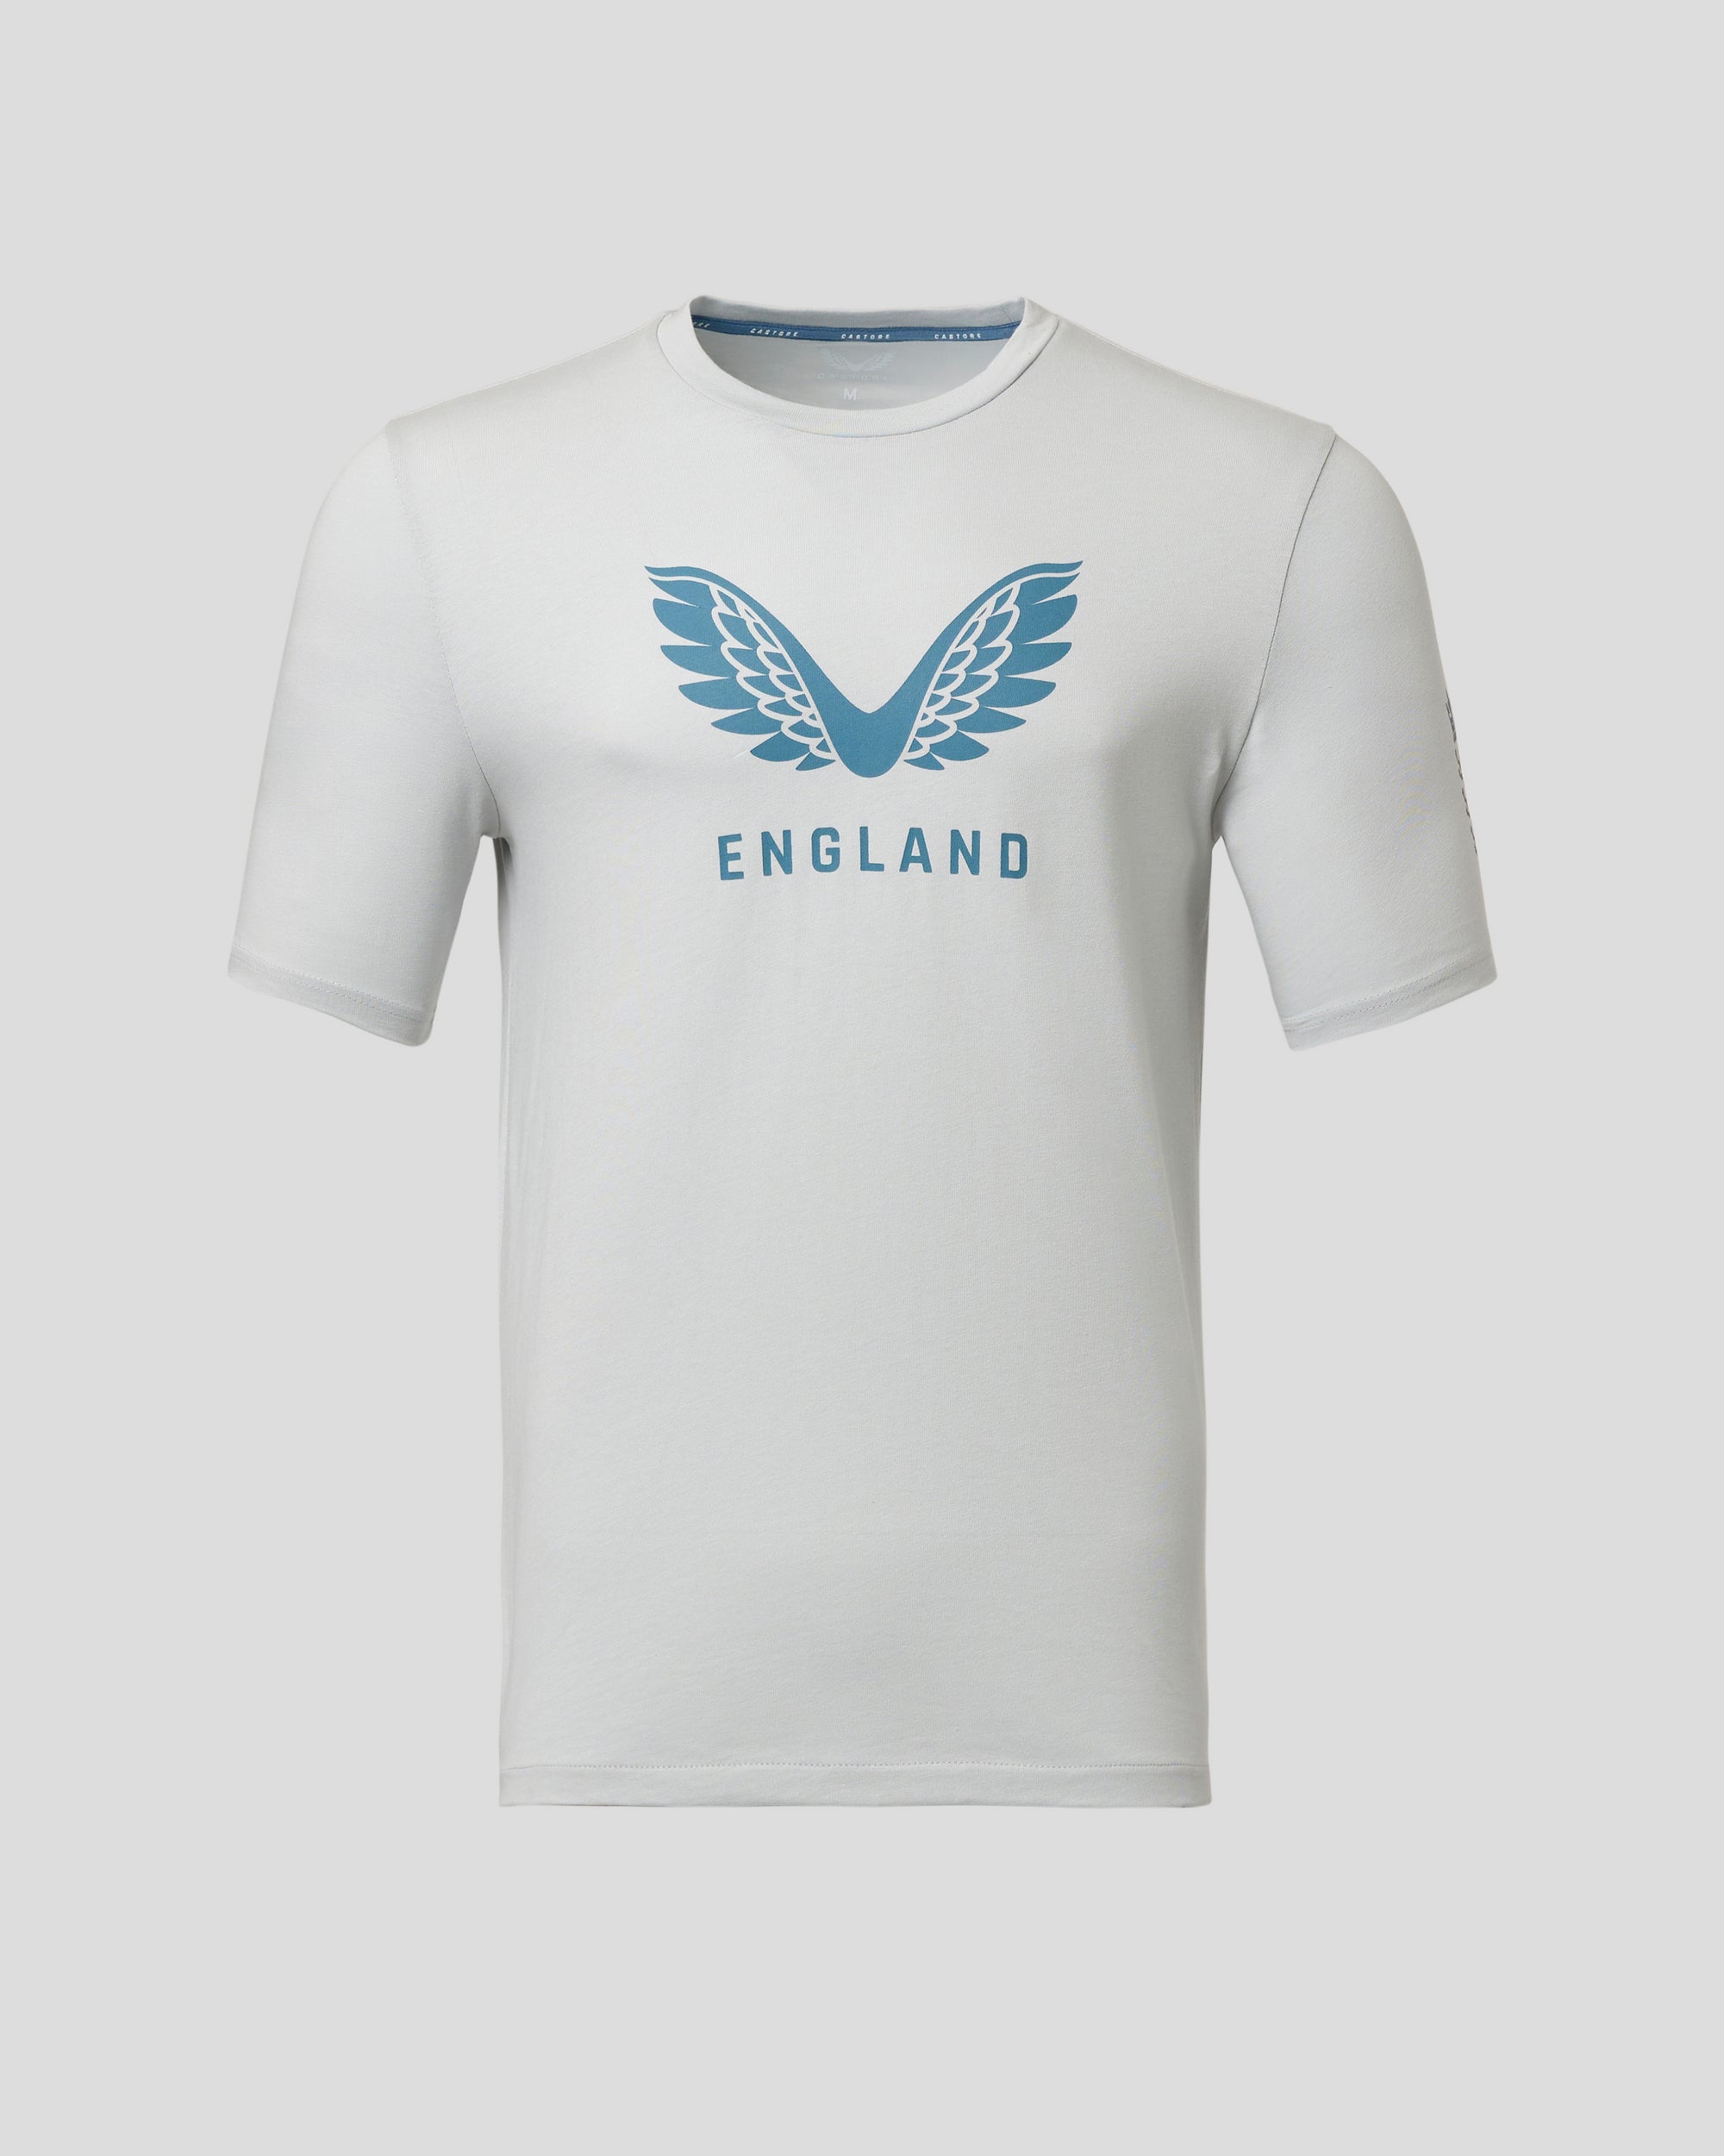 Short Sleeve Cotton England Cricket Top